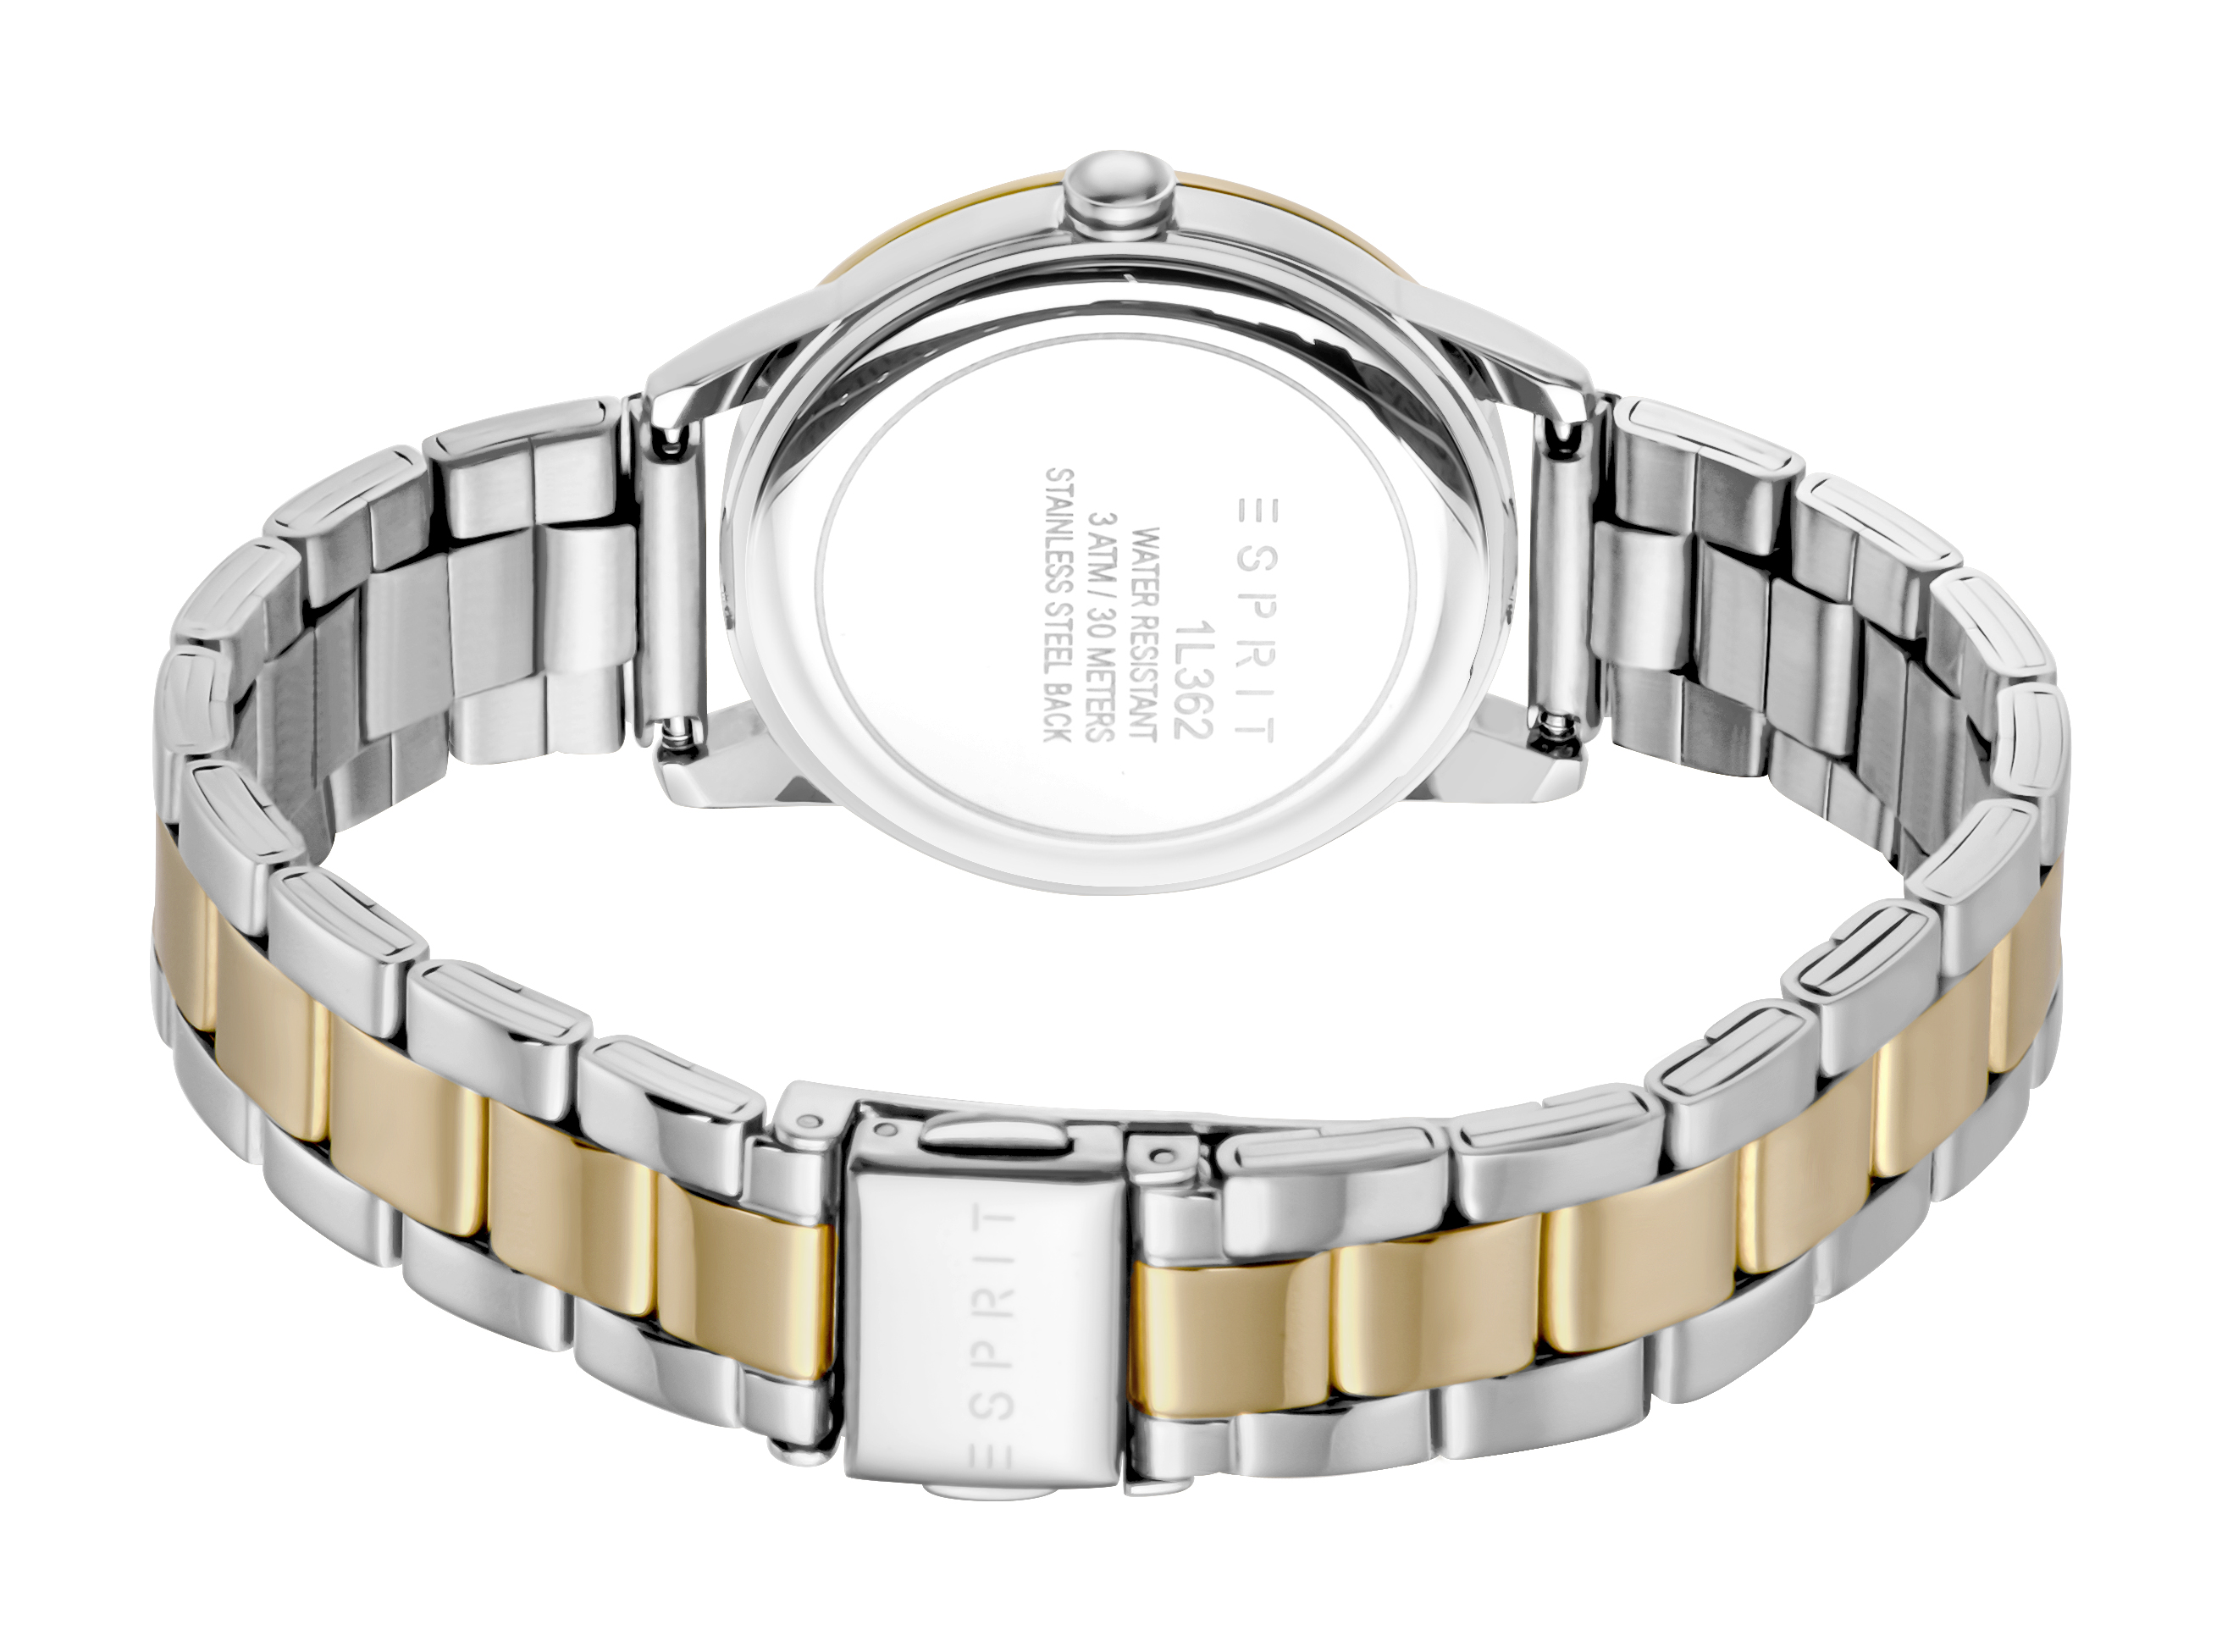 Унисекс часы ESPRIT Esprit ES1L362M0105